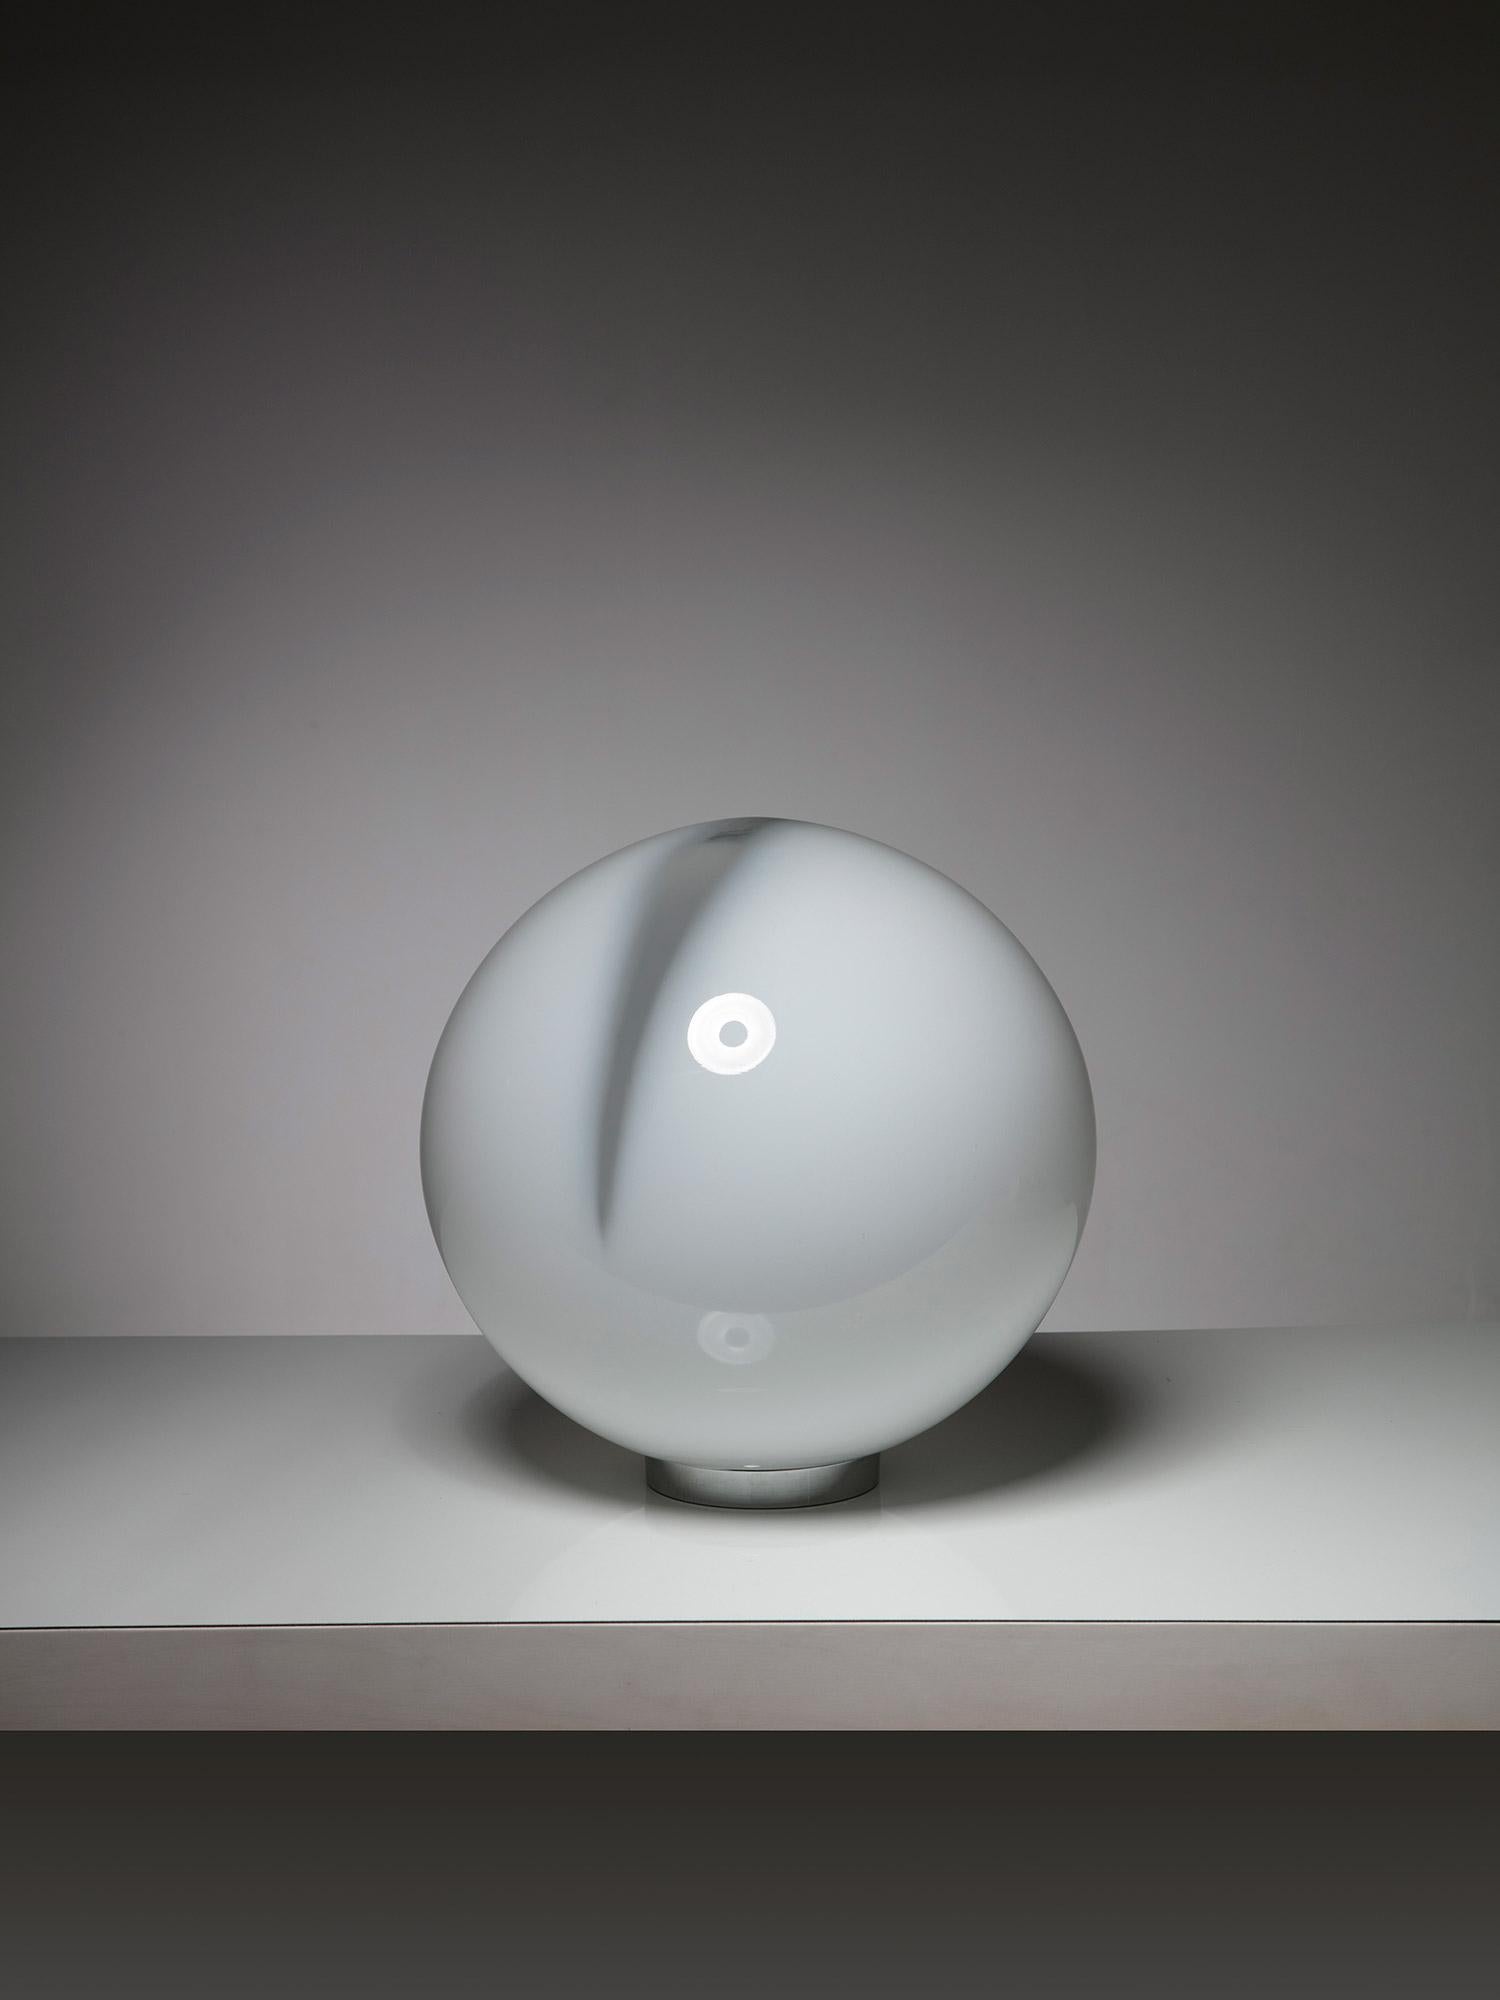 Rare lampe de table d'Alfredo Barbini pour Barbini.
Grande sphère opaline en verre de Murano avec une bande centrale en cristal.
Une pleine lune émotionnelle de la taille d'une table. 